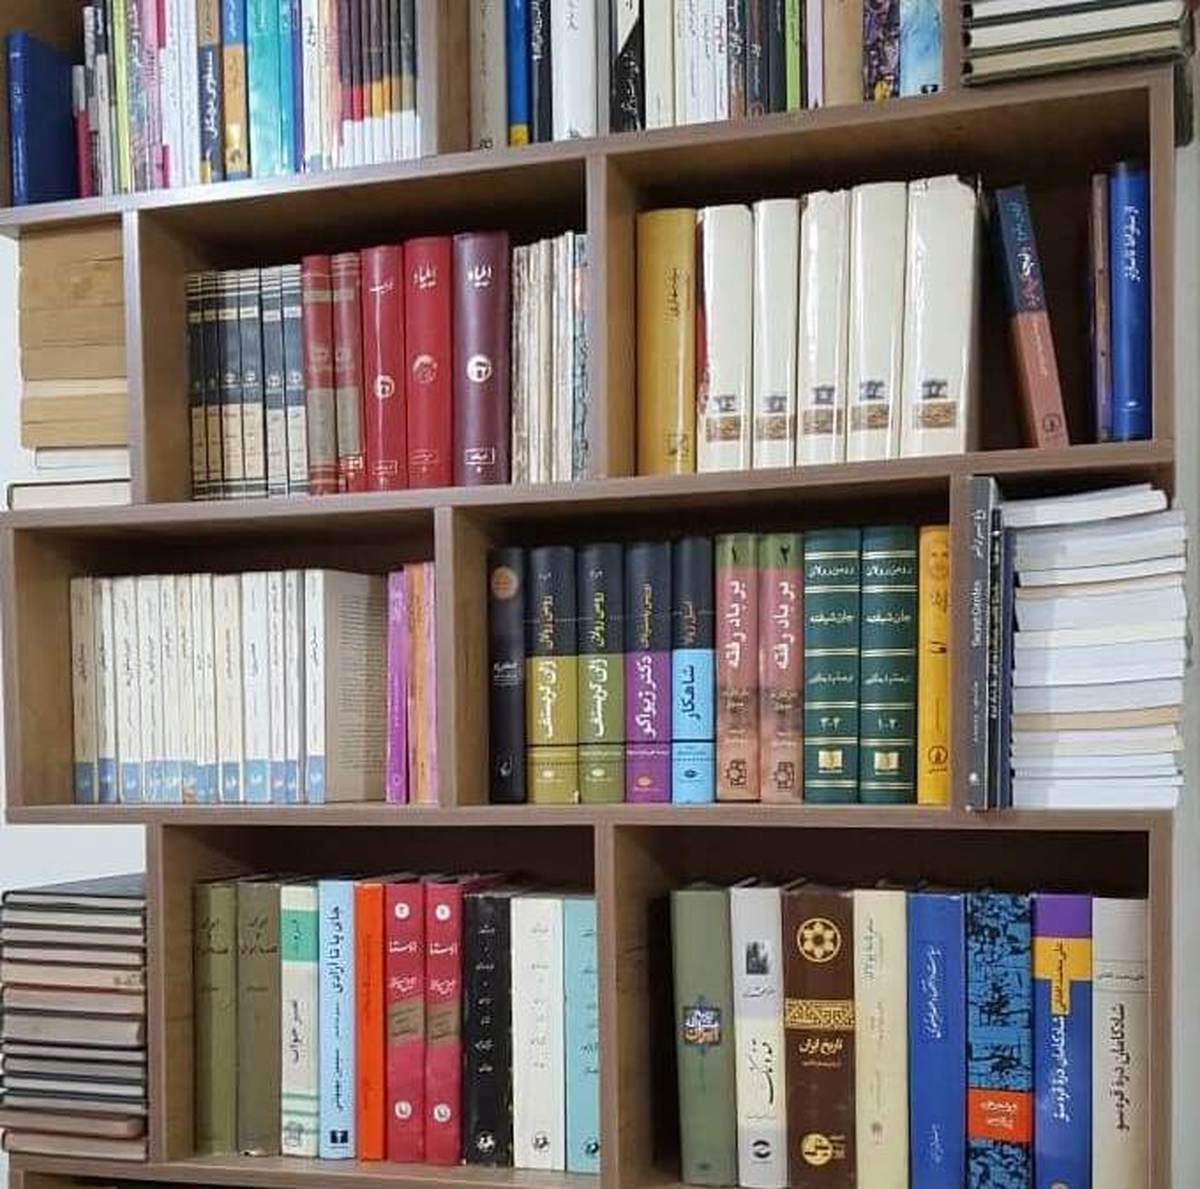 عضویت 9 هزار نفر در کتابخانه های البرز